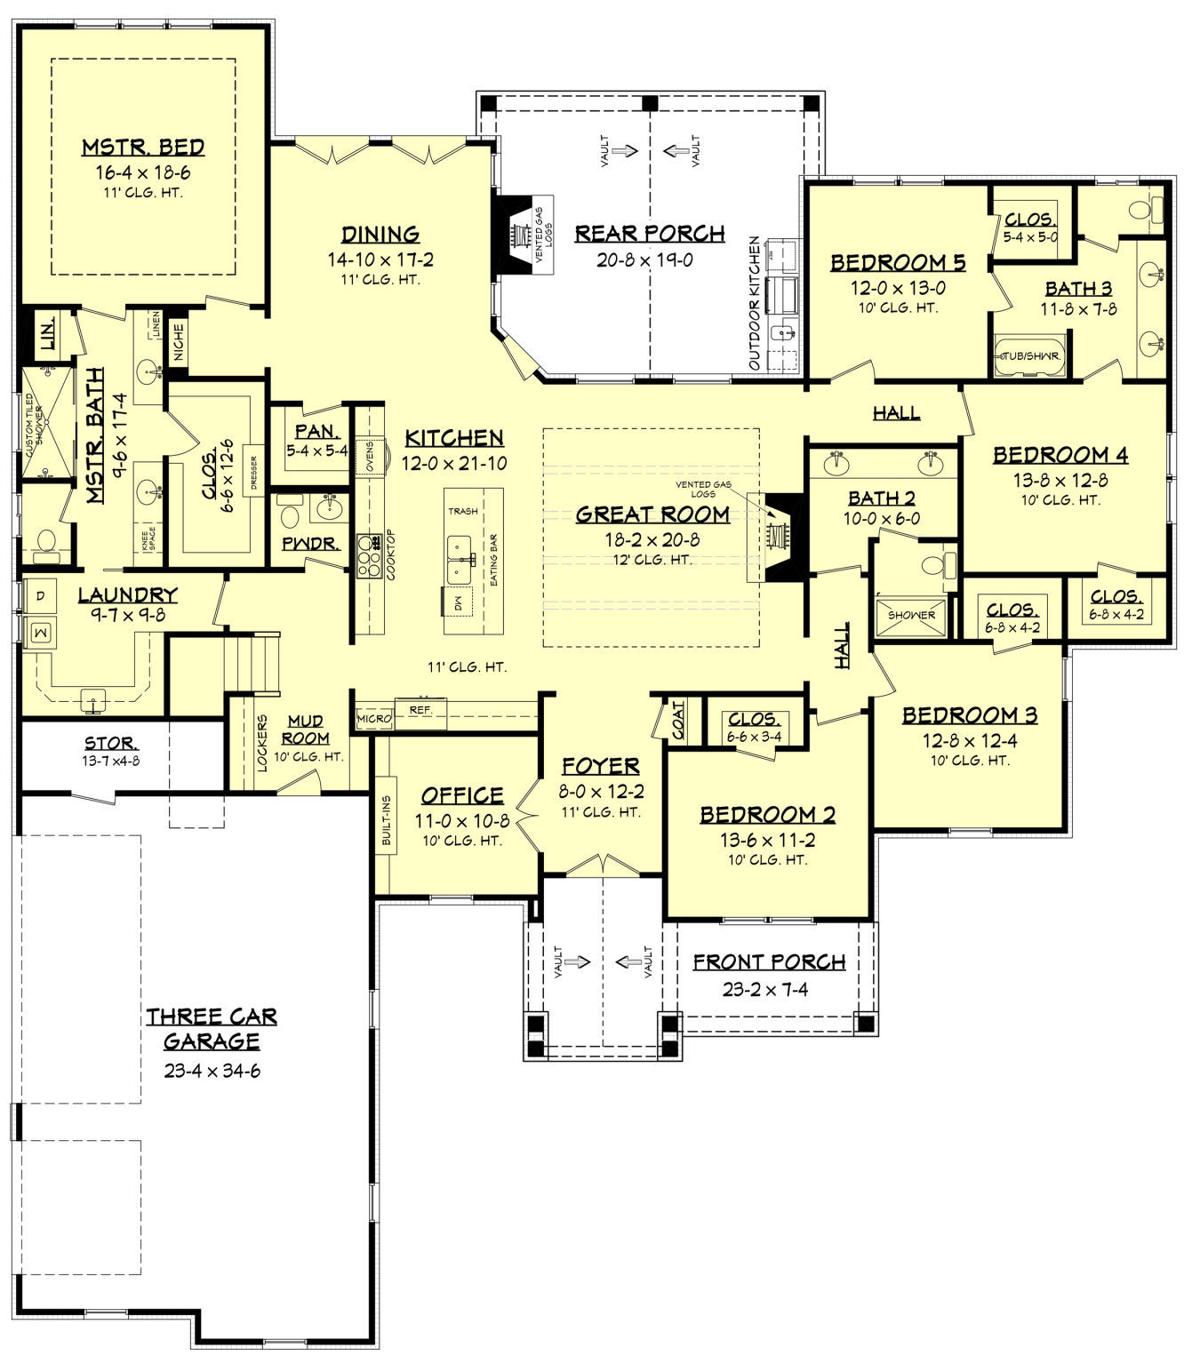 Plan Of The Week 11 25 18 Real Estate Corner Greensboro Com